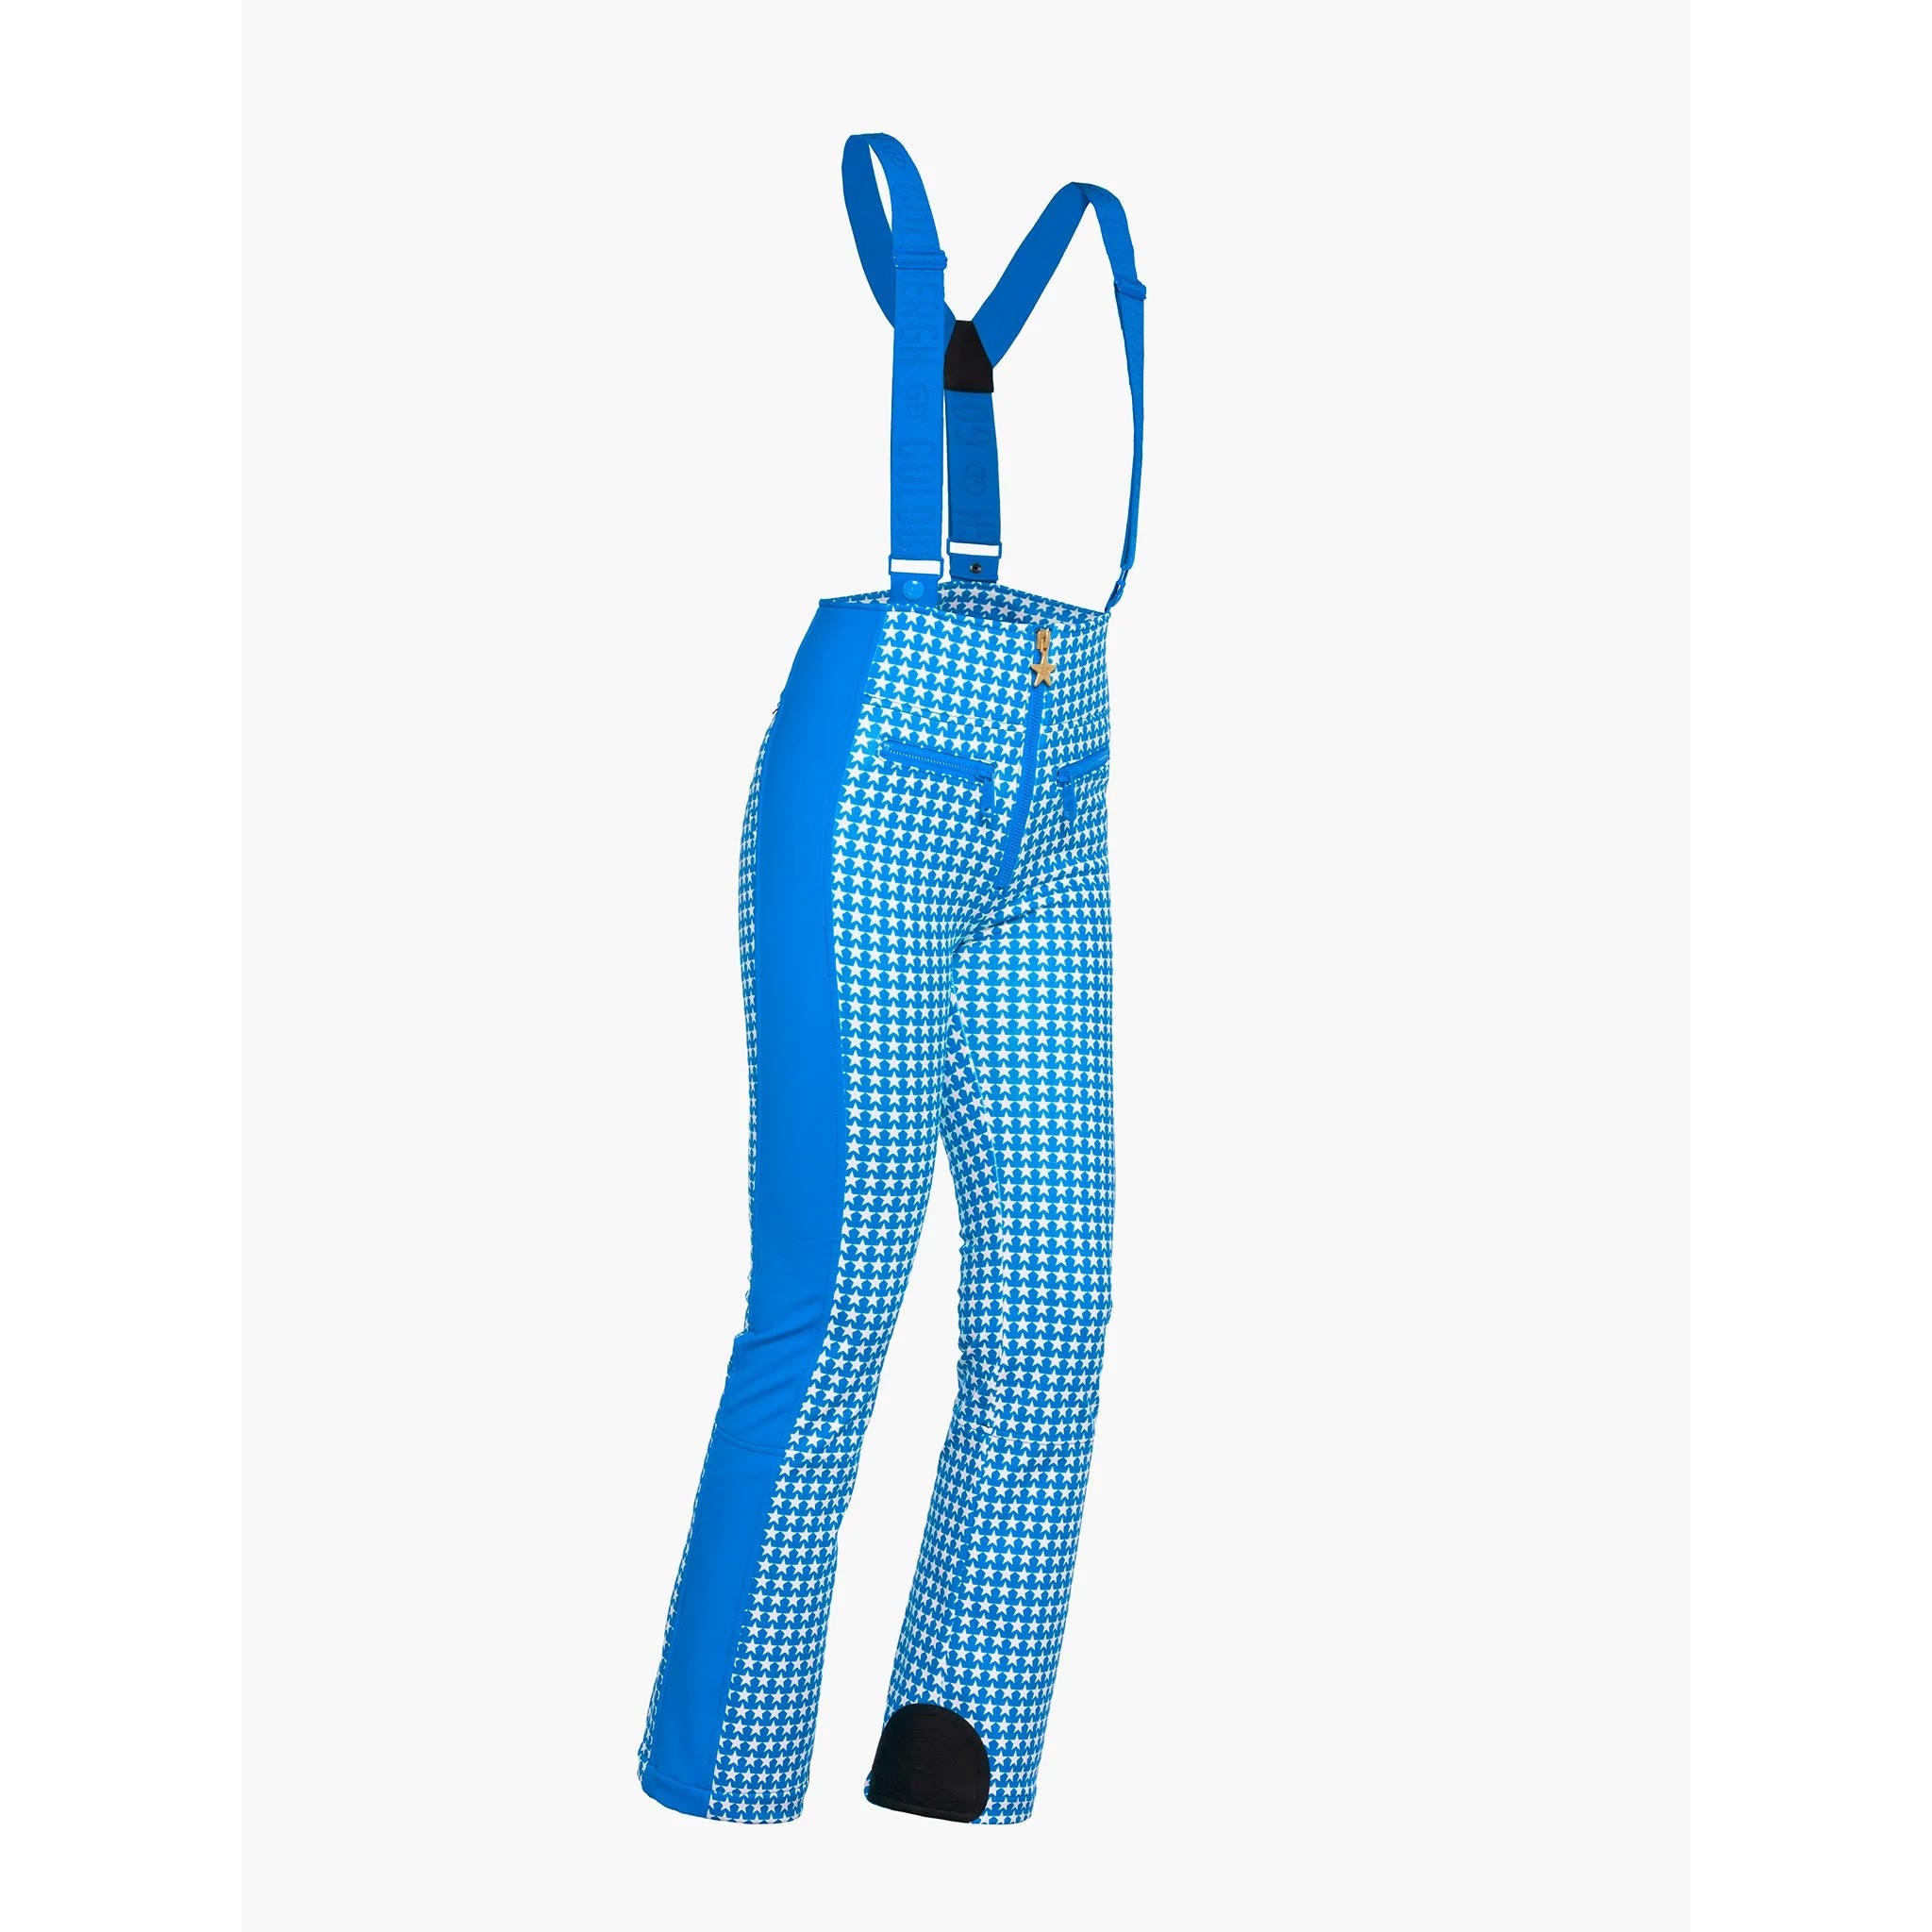 Starski Ski Pants in Electric Blue